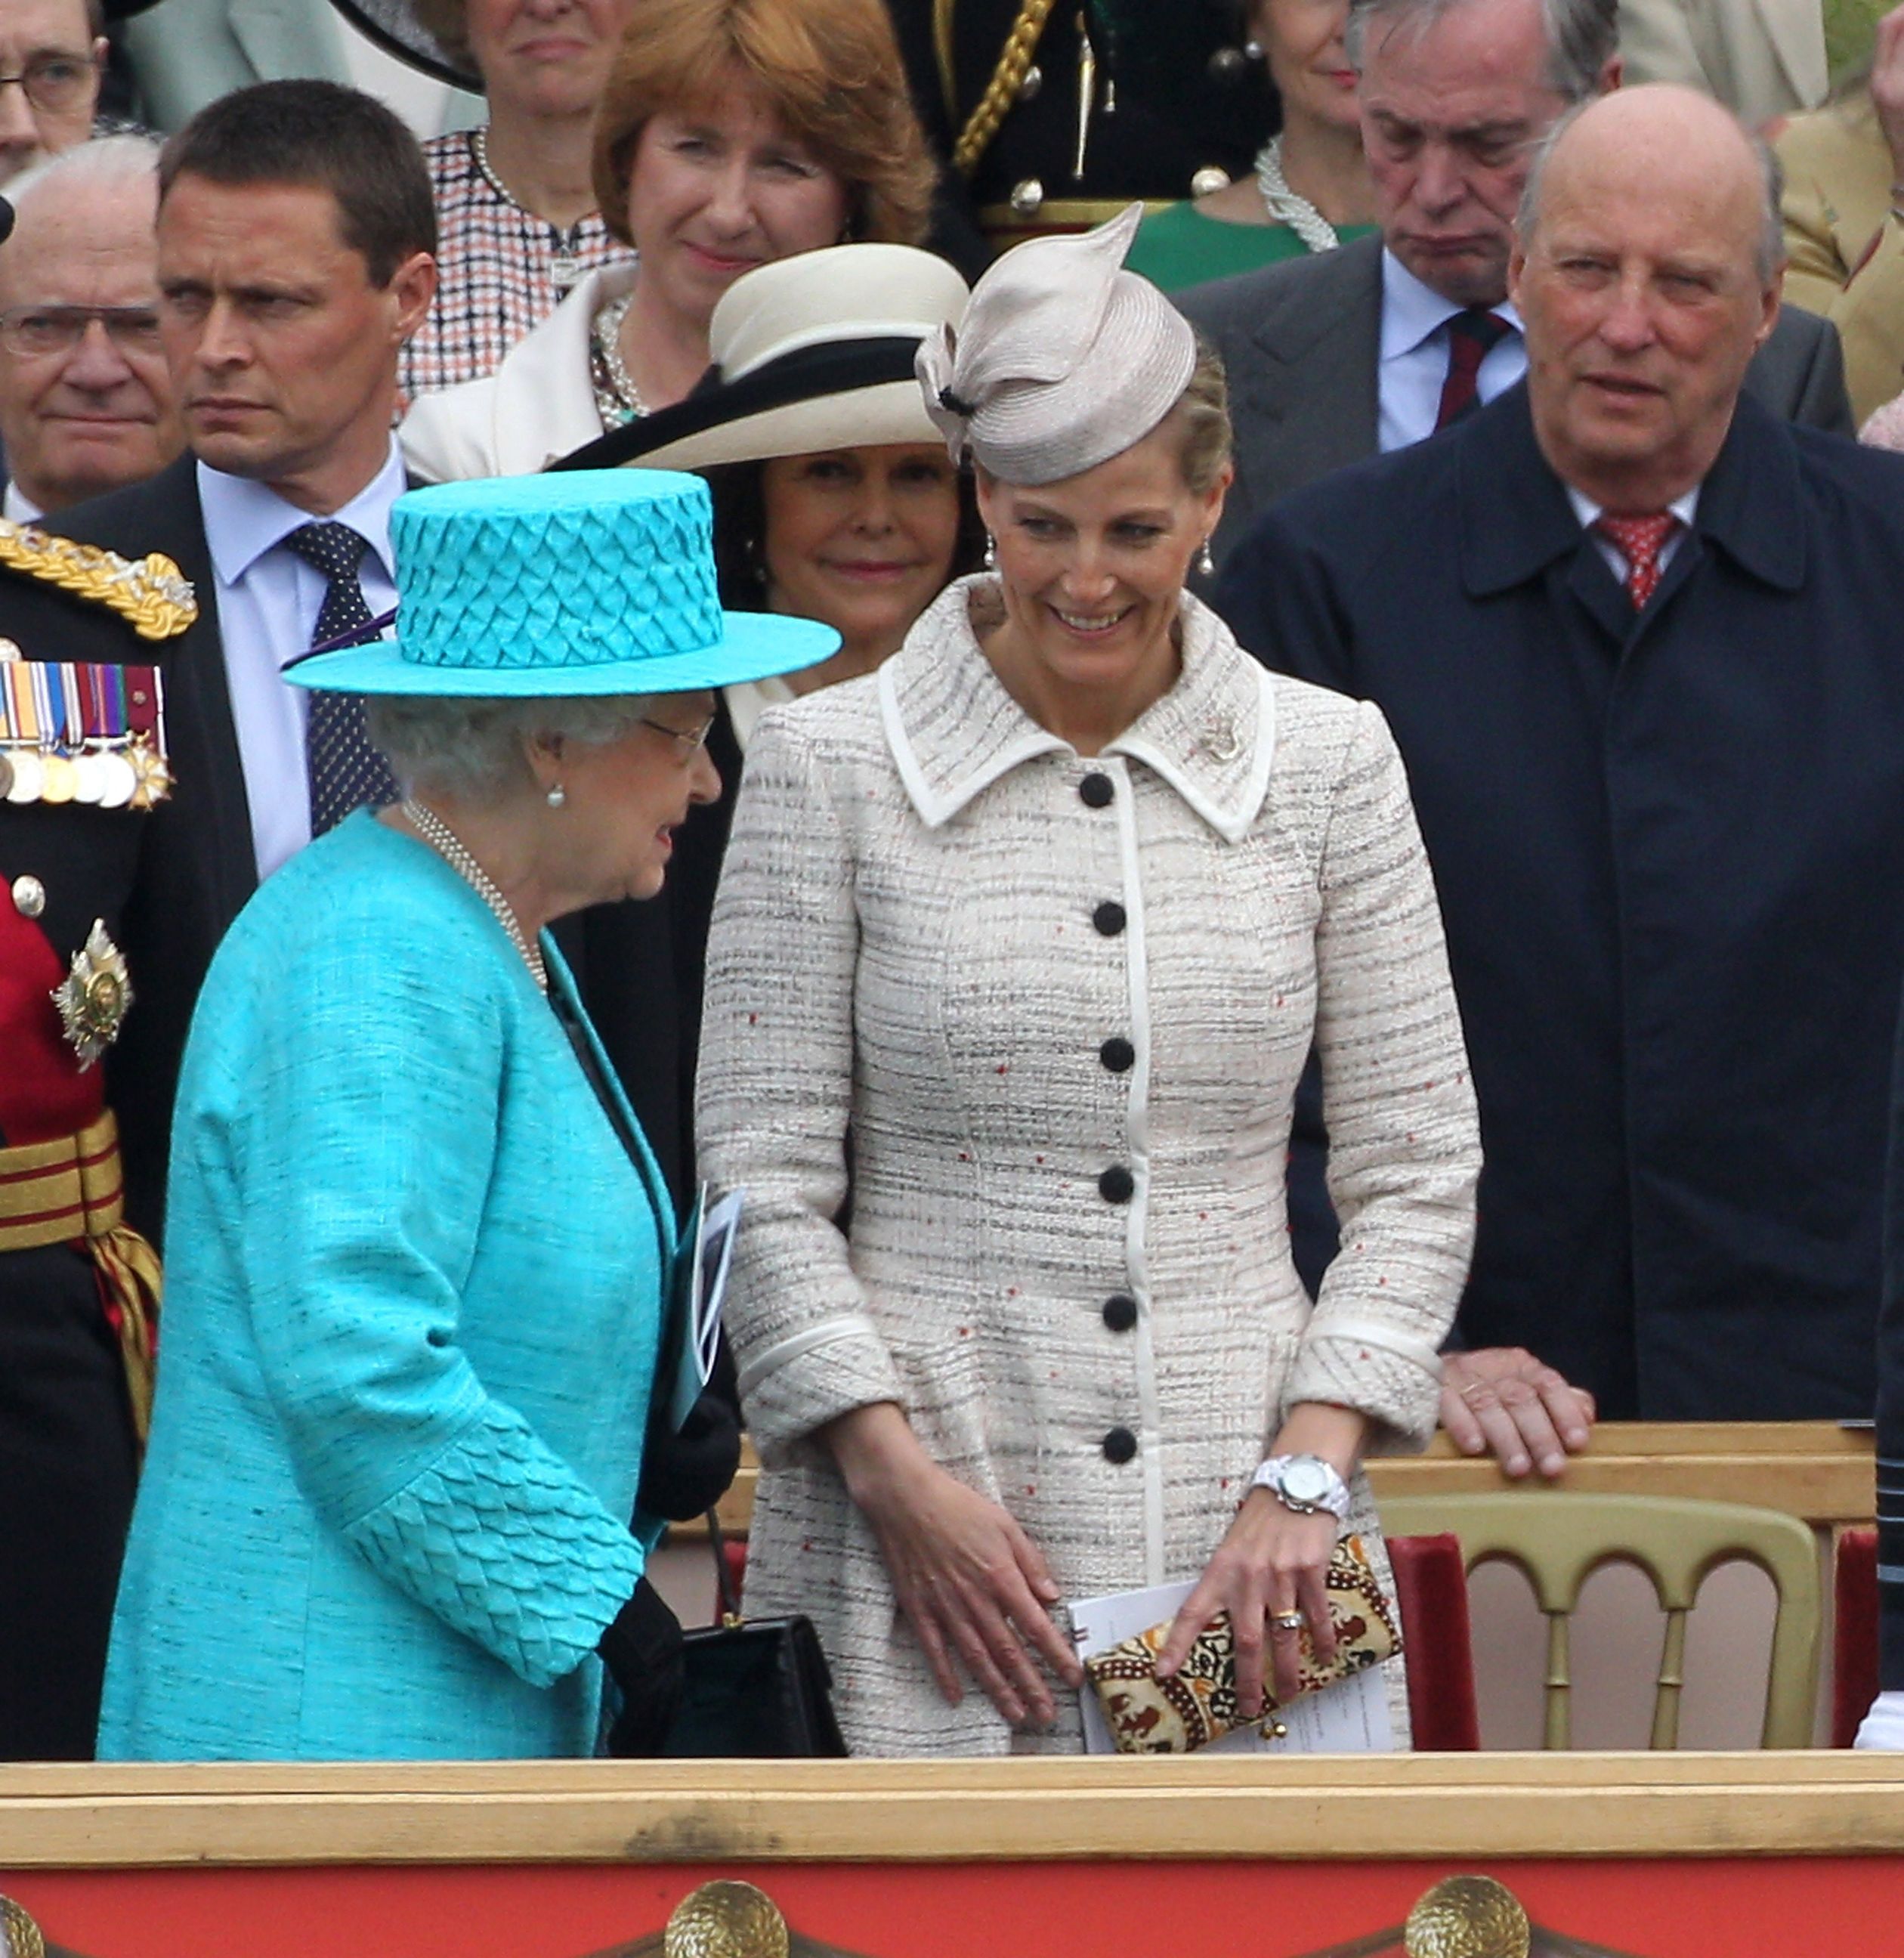 Samen met koningin Elizabeth, met wie Sophie heel goed overweg kan. Op de achtergrond zie je koning